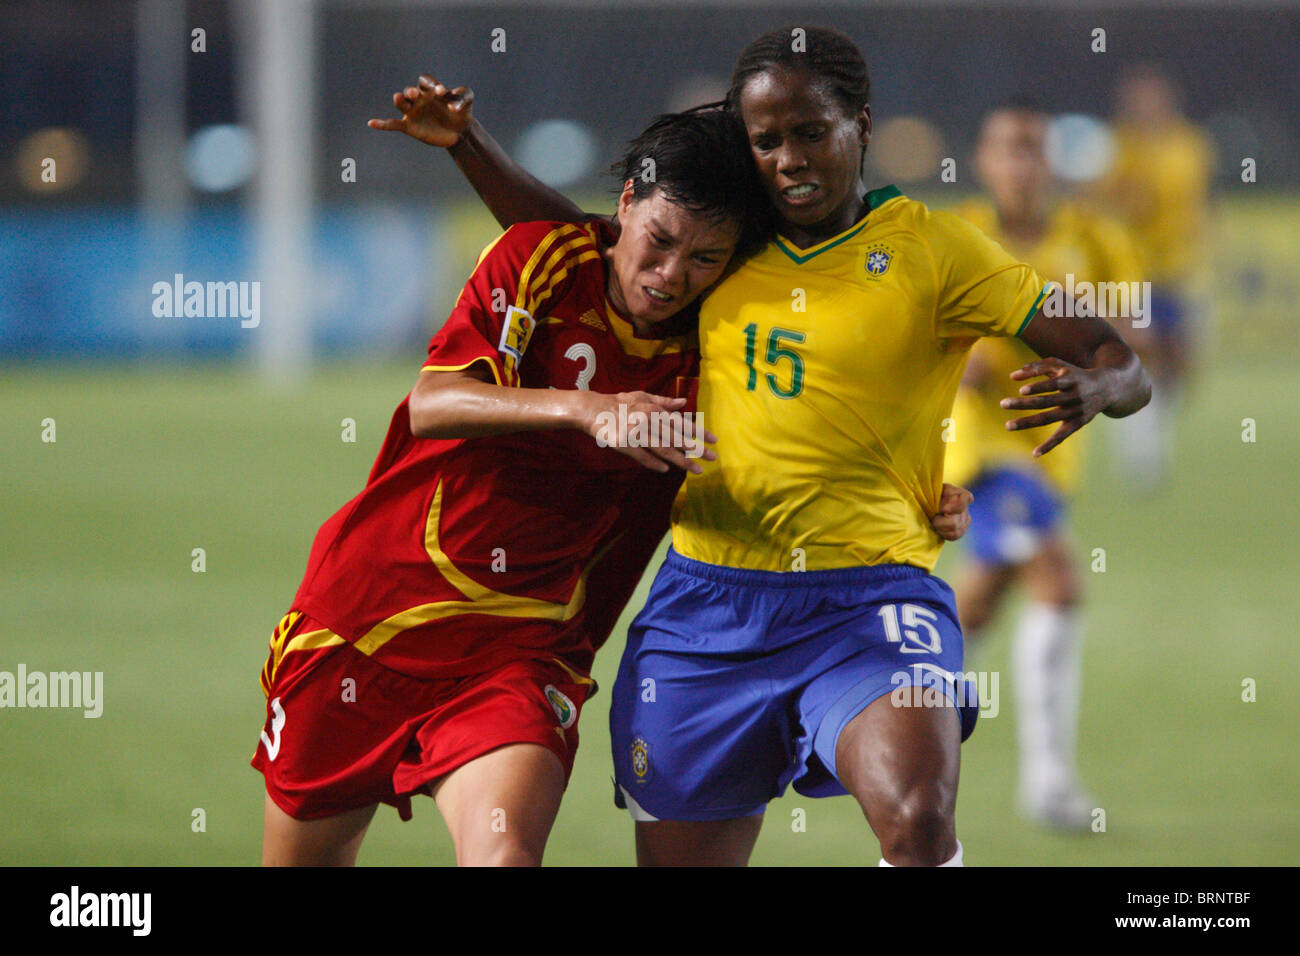 Li Jie della Cina (3) e Katia del Brasile (15) battaglia durante un 2007 Coppa del Mondo Donne partita di calcio. Foto Stock